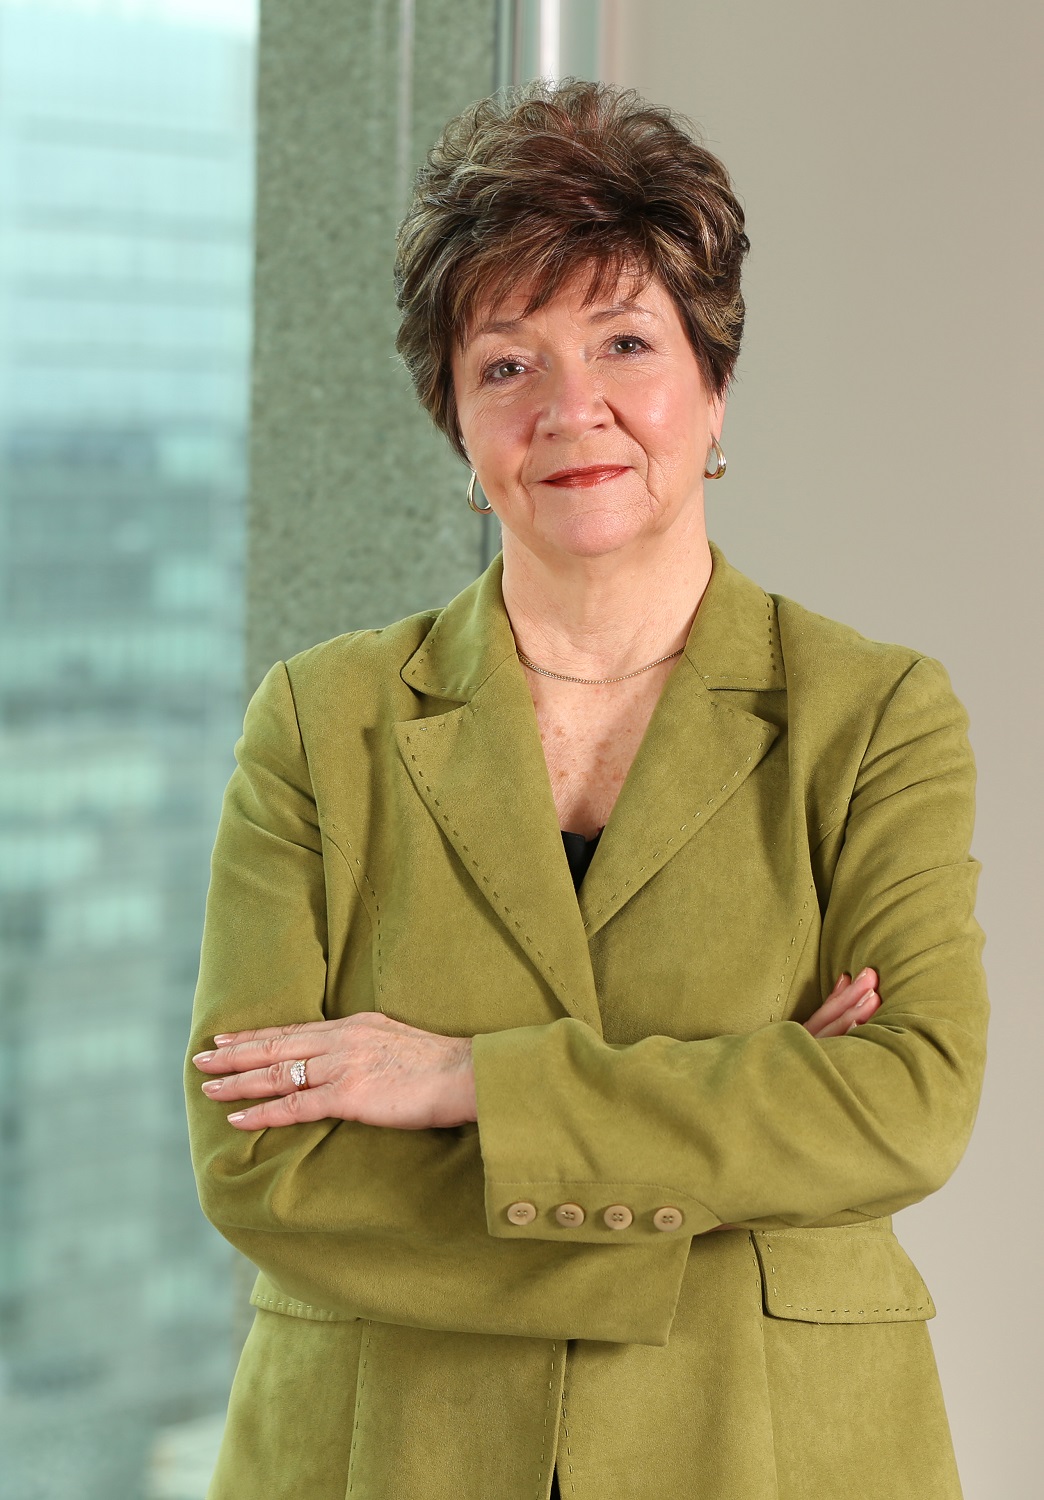 Photo de Lynn Morrison, commissaire à l'intégrité de 2010 à 2015